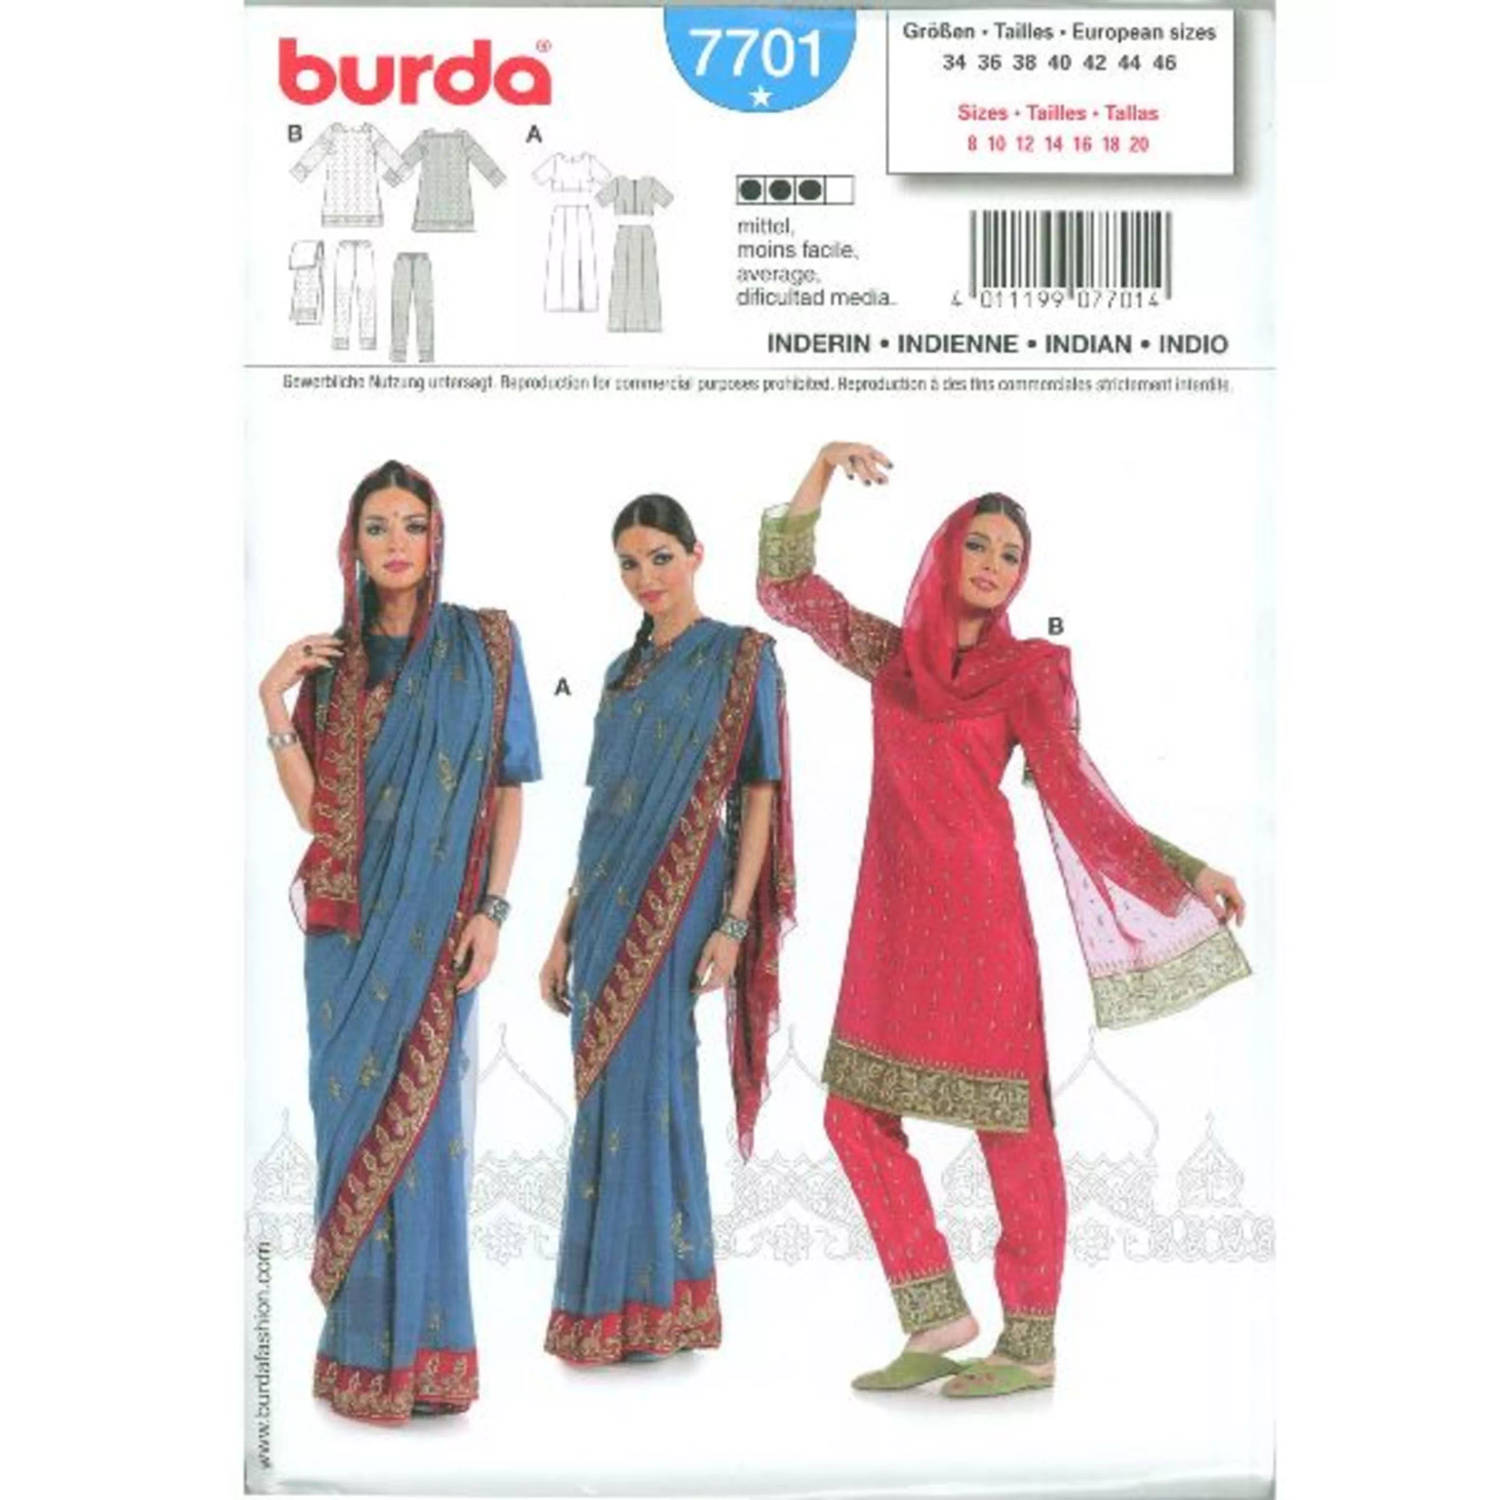 Burda Naaipatroon 7701 - Indisch kostuum in variaties